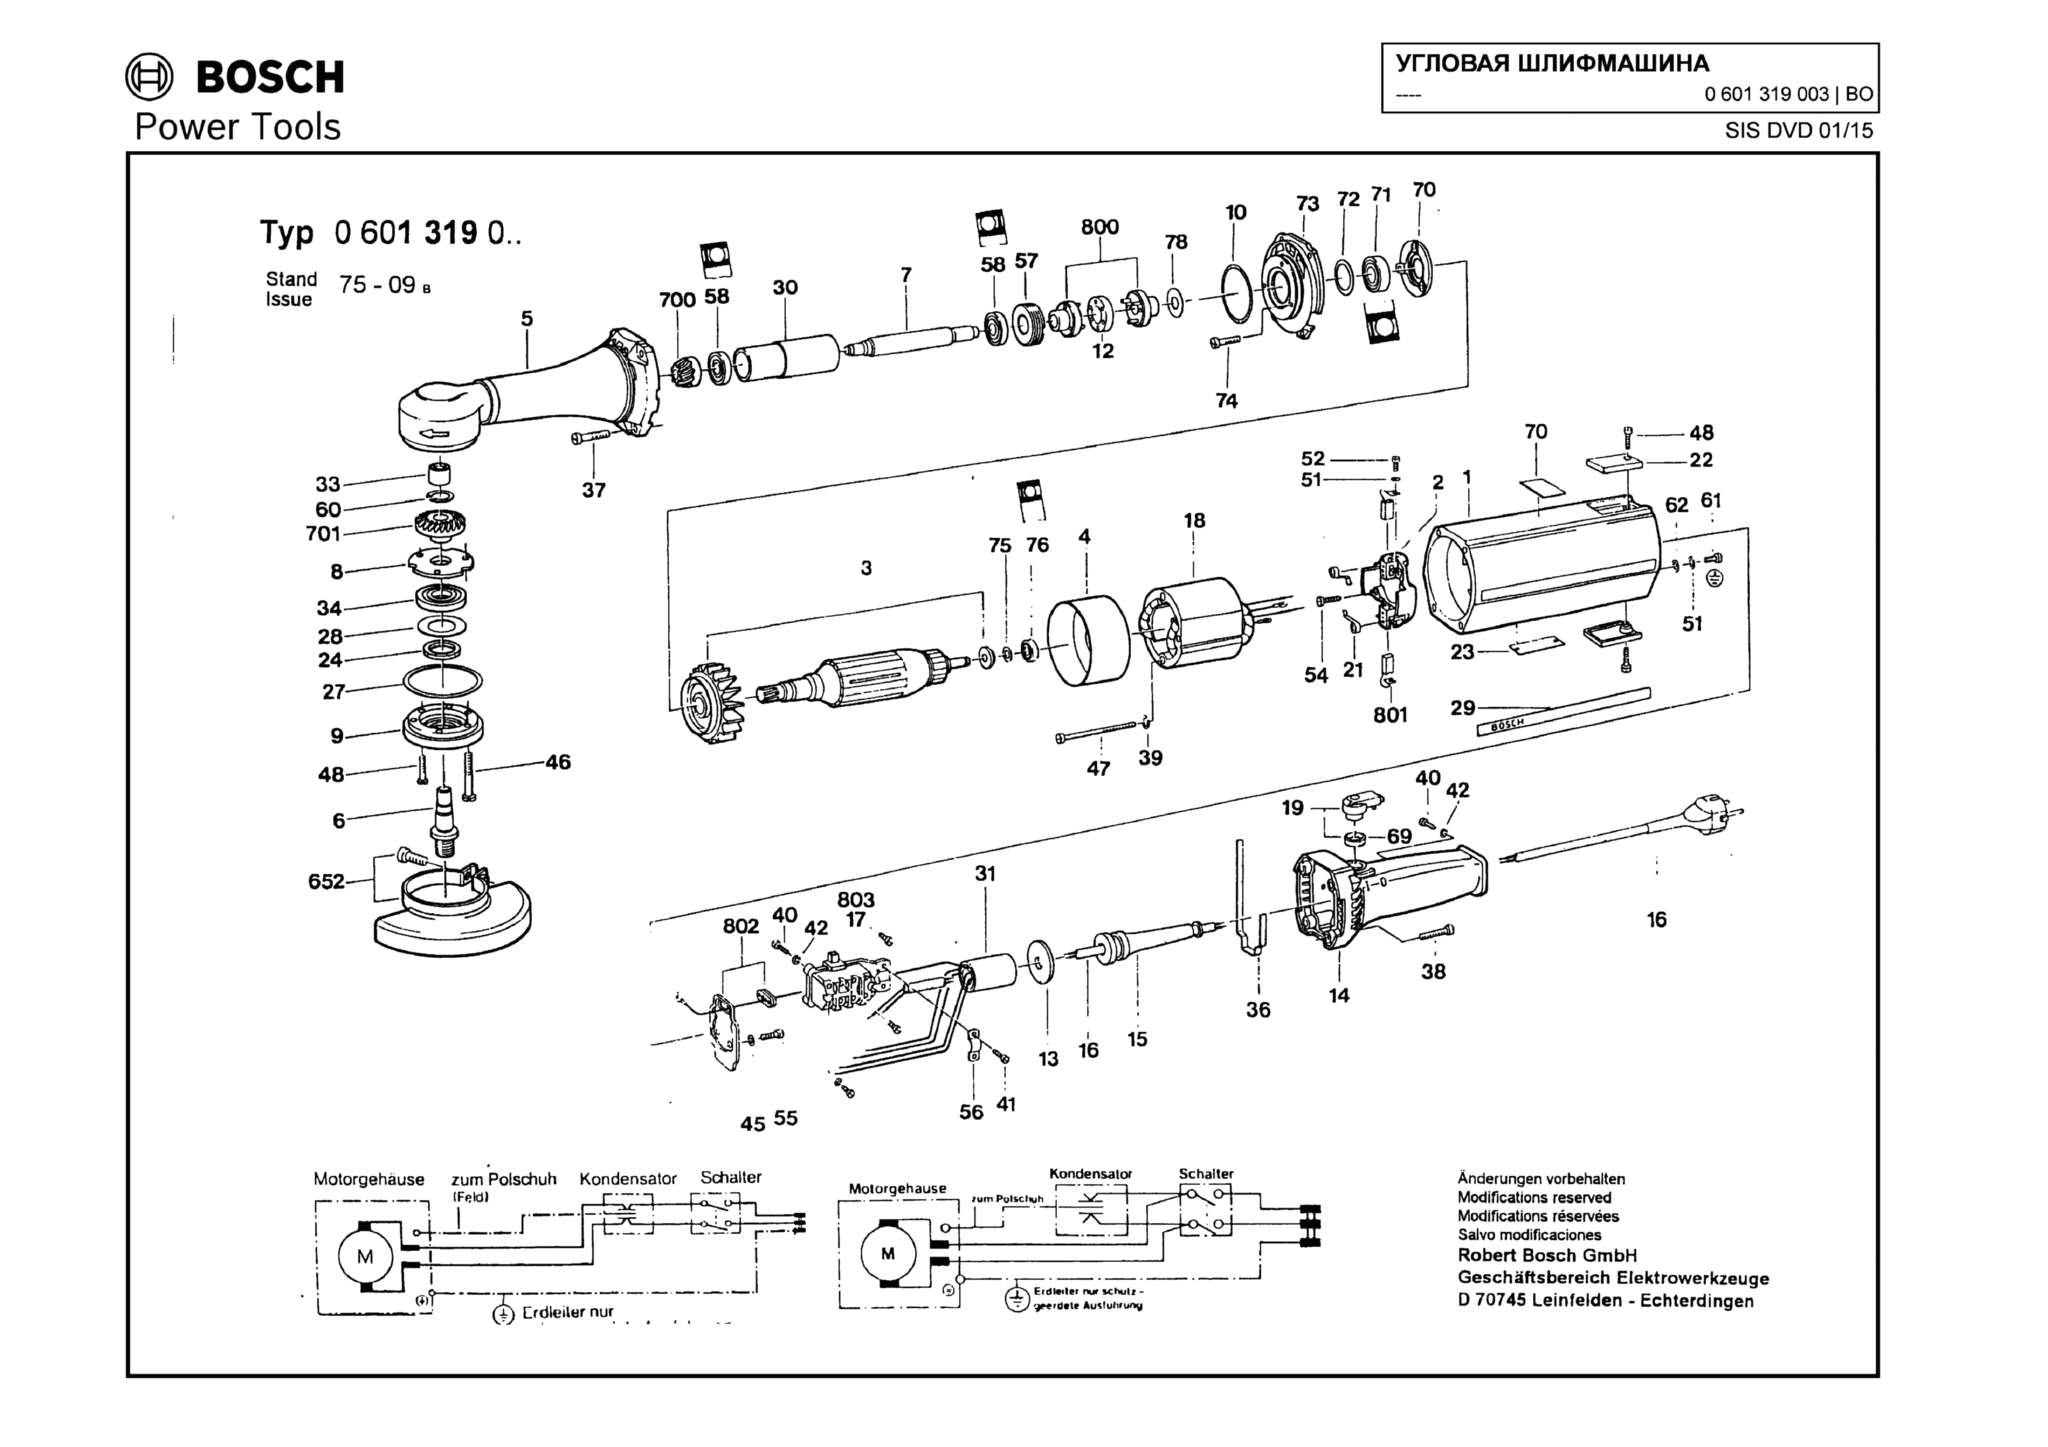 Запчасти, схема и деталировка Bosch (ТИП 0601319003)